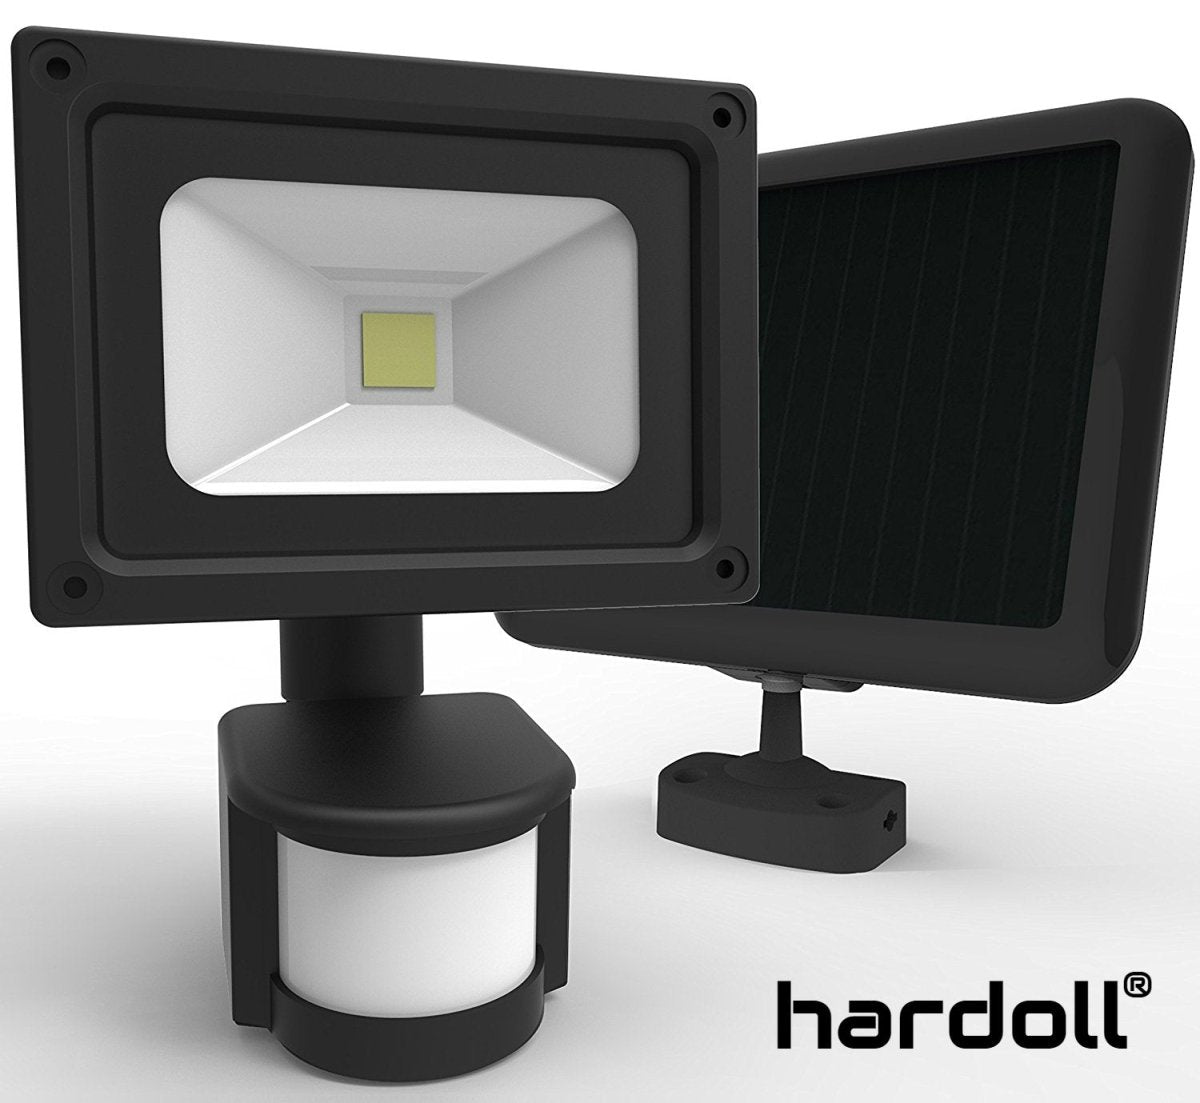 Solar 60 LED Motion Sensor Solar Light for Home Security Outdoor Garden | Hardoll Enterprises - Hardoll